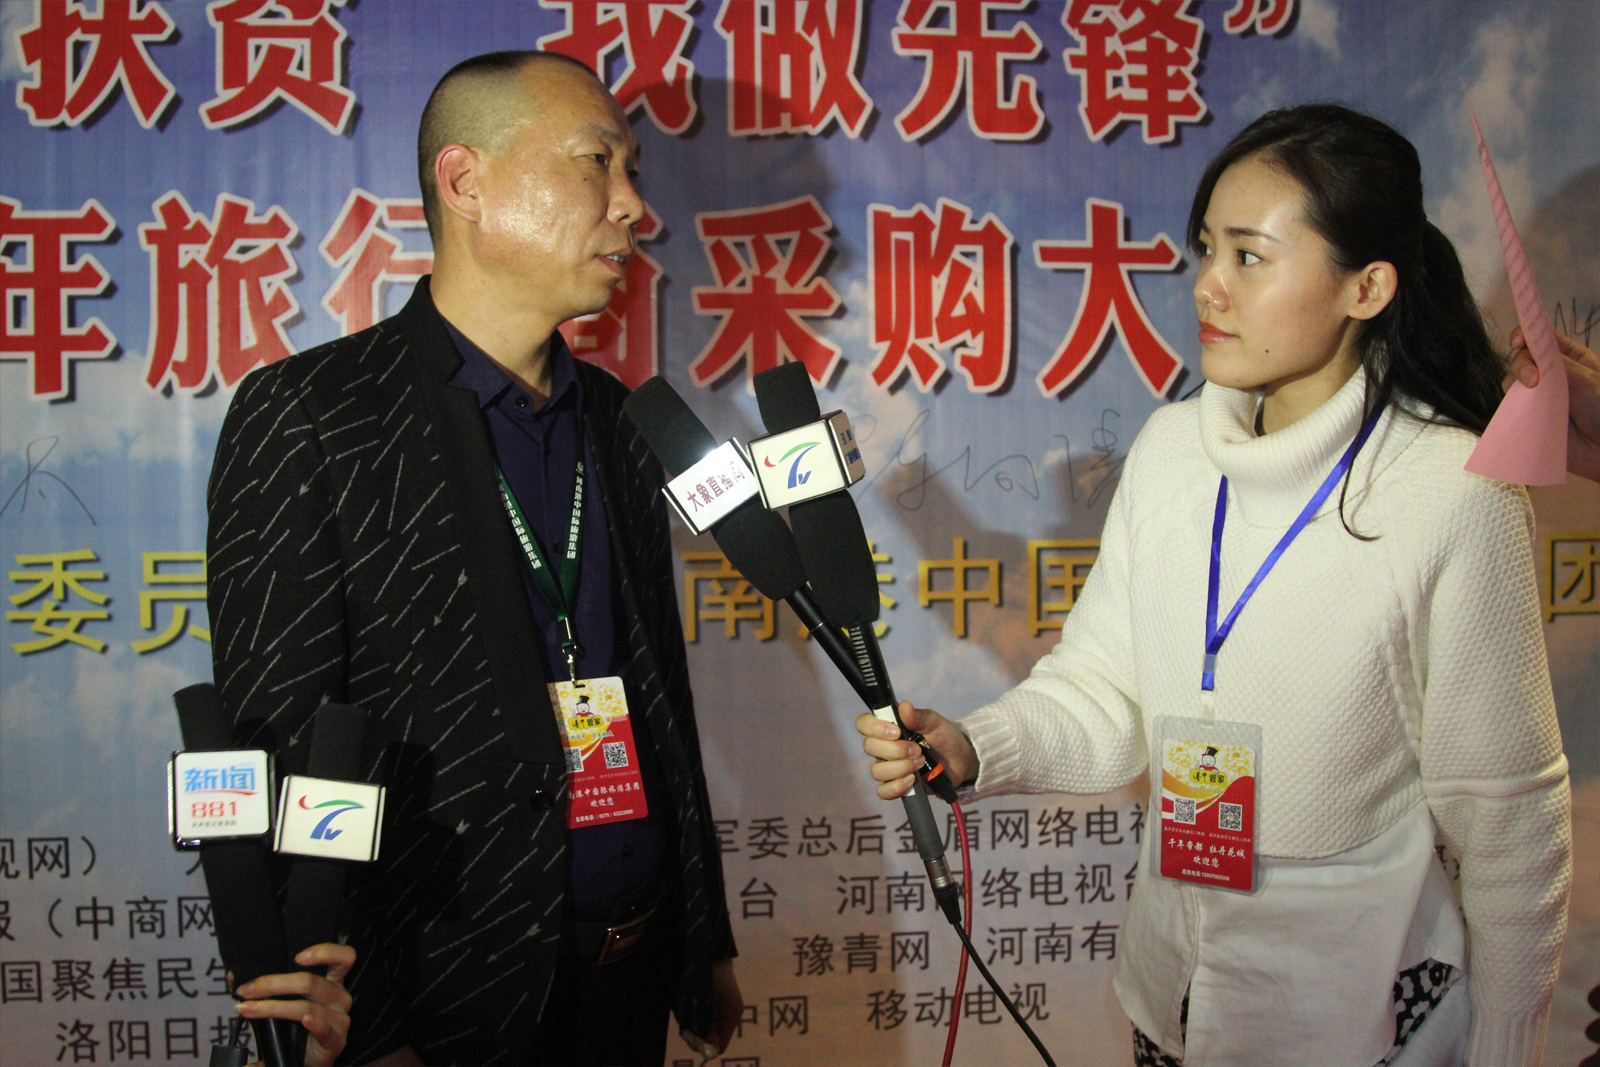 洛阳市旅游发展委员会监管科科长李国强对媒体记者说,去年在嵩县白河